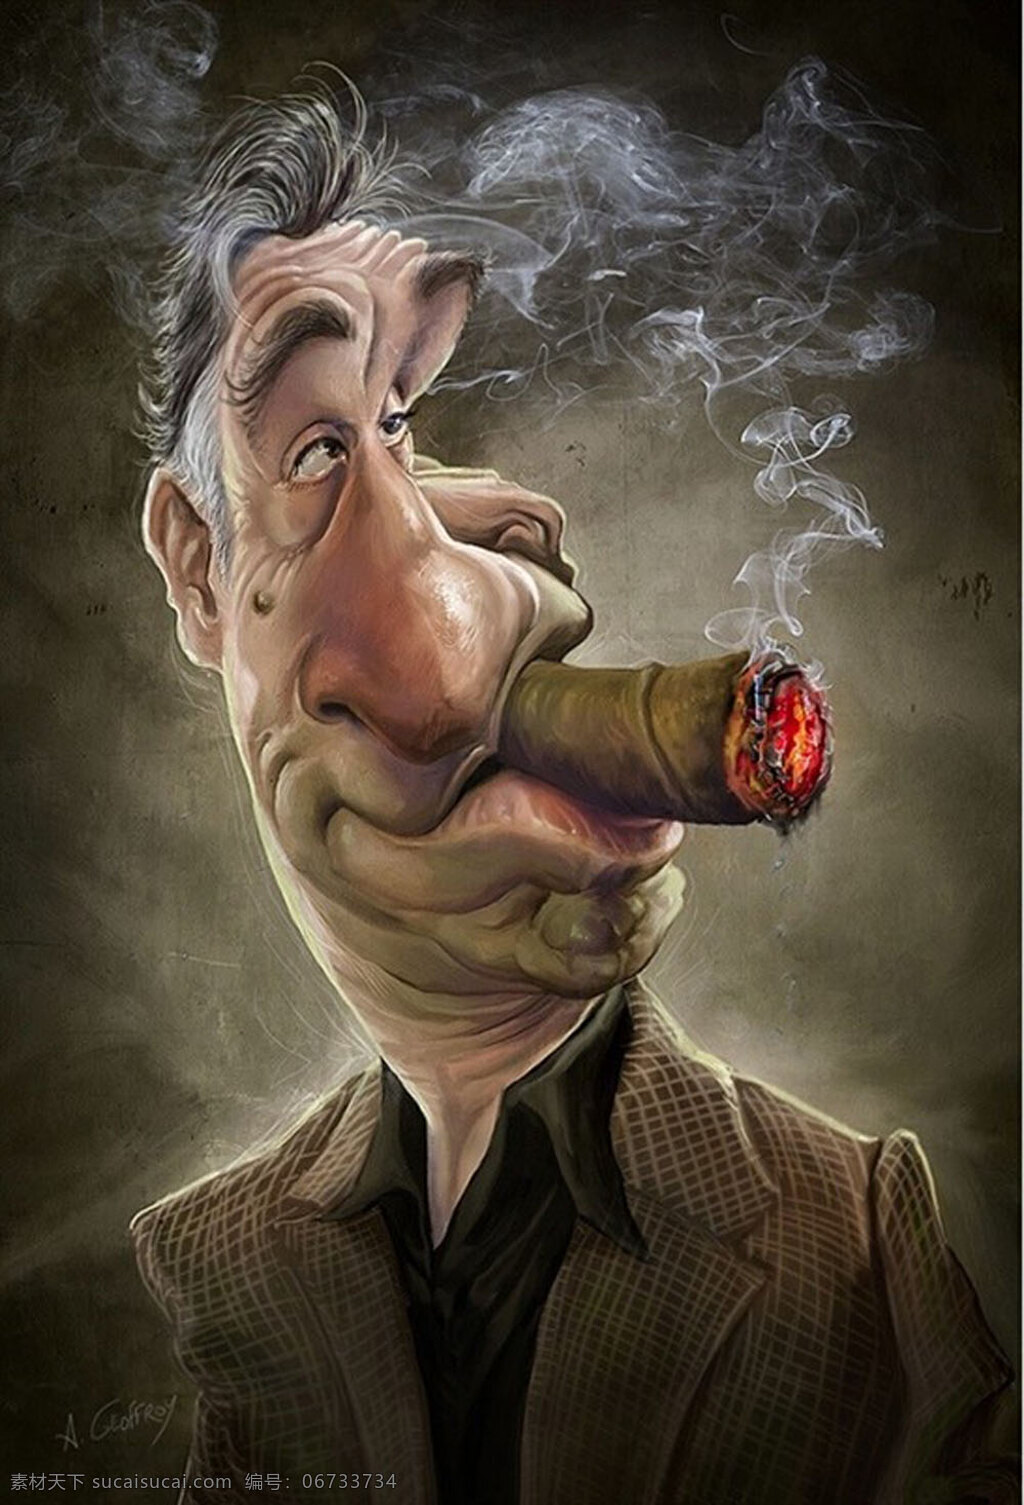 夸张 人物 插画 作品 经典 人 男人 抽象 anthony geoffroy 烟枪 大亨 西装 抽烟 火光 烟雾 动漫人物 动漫动画